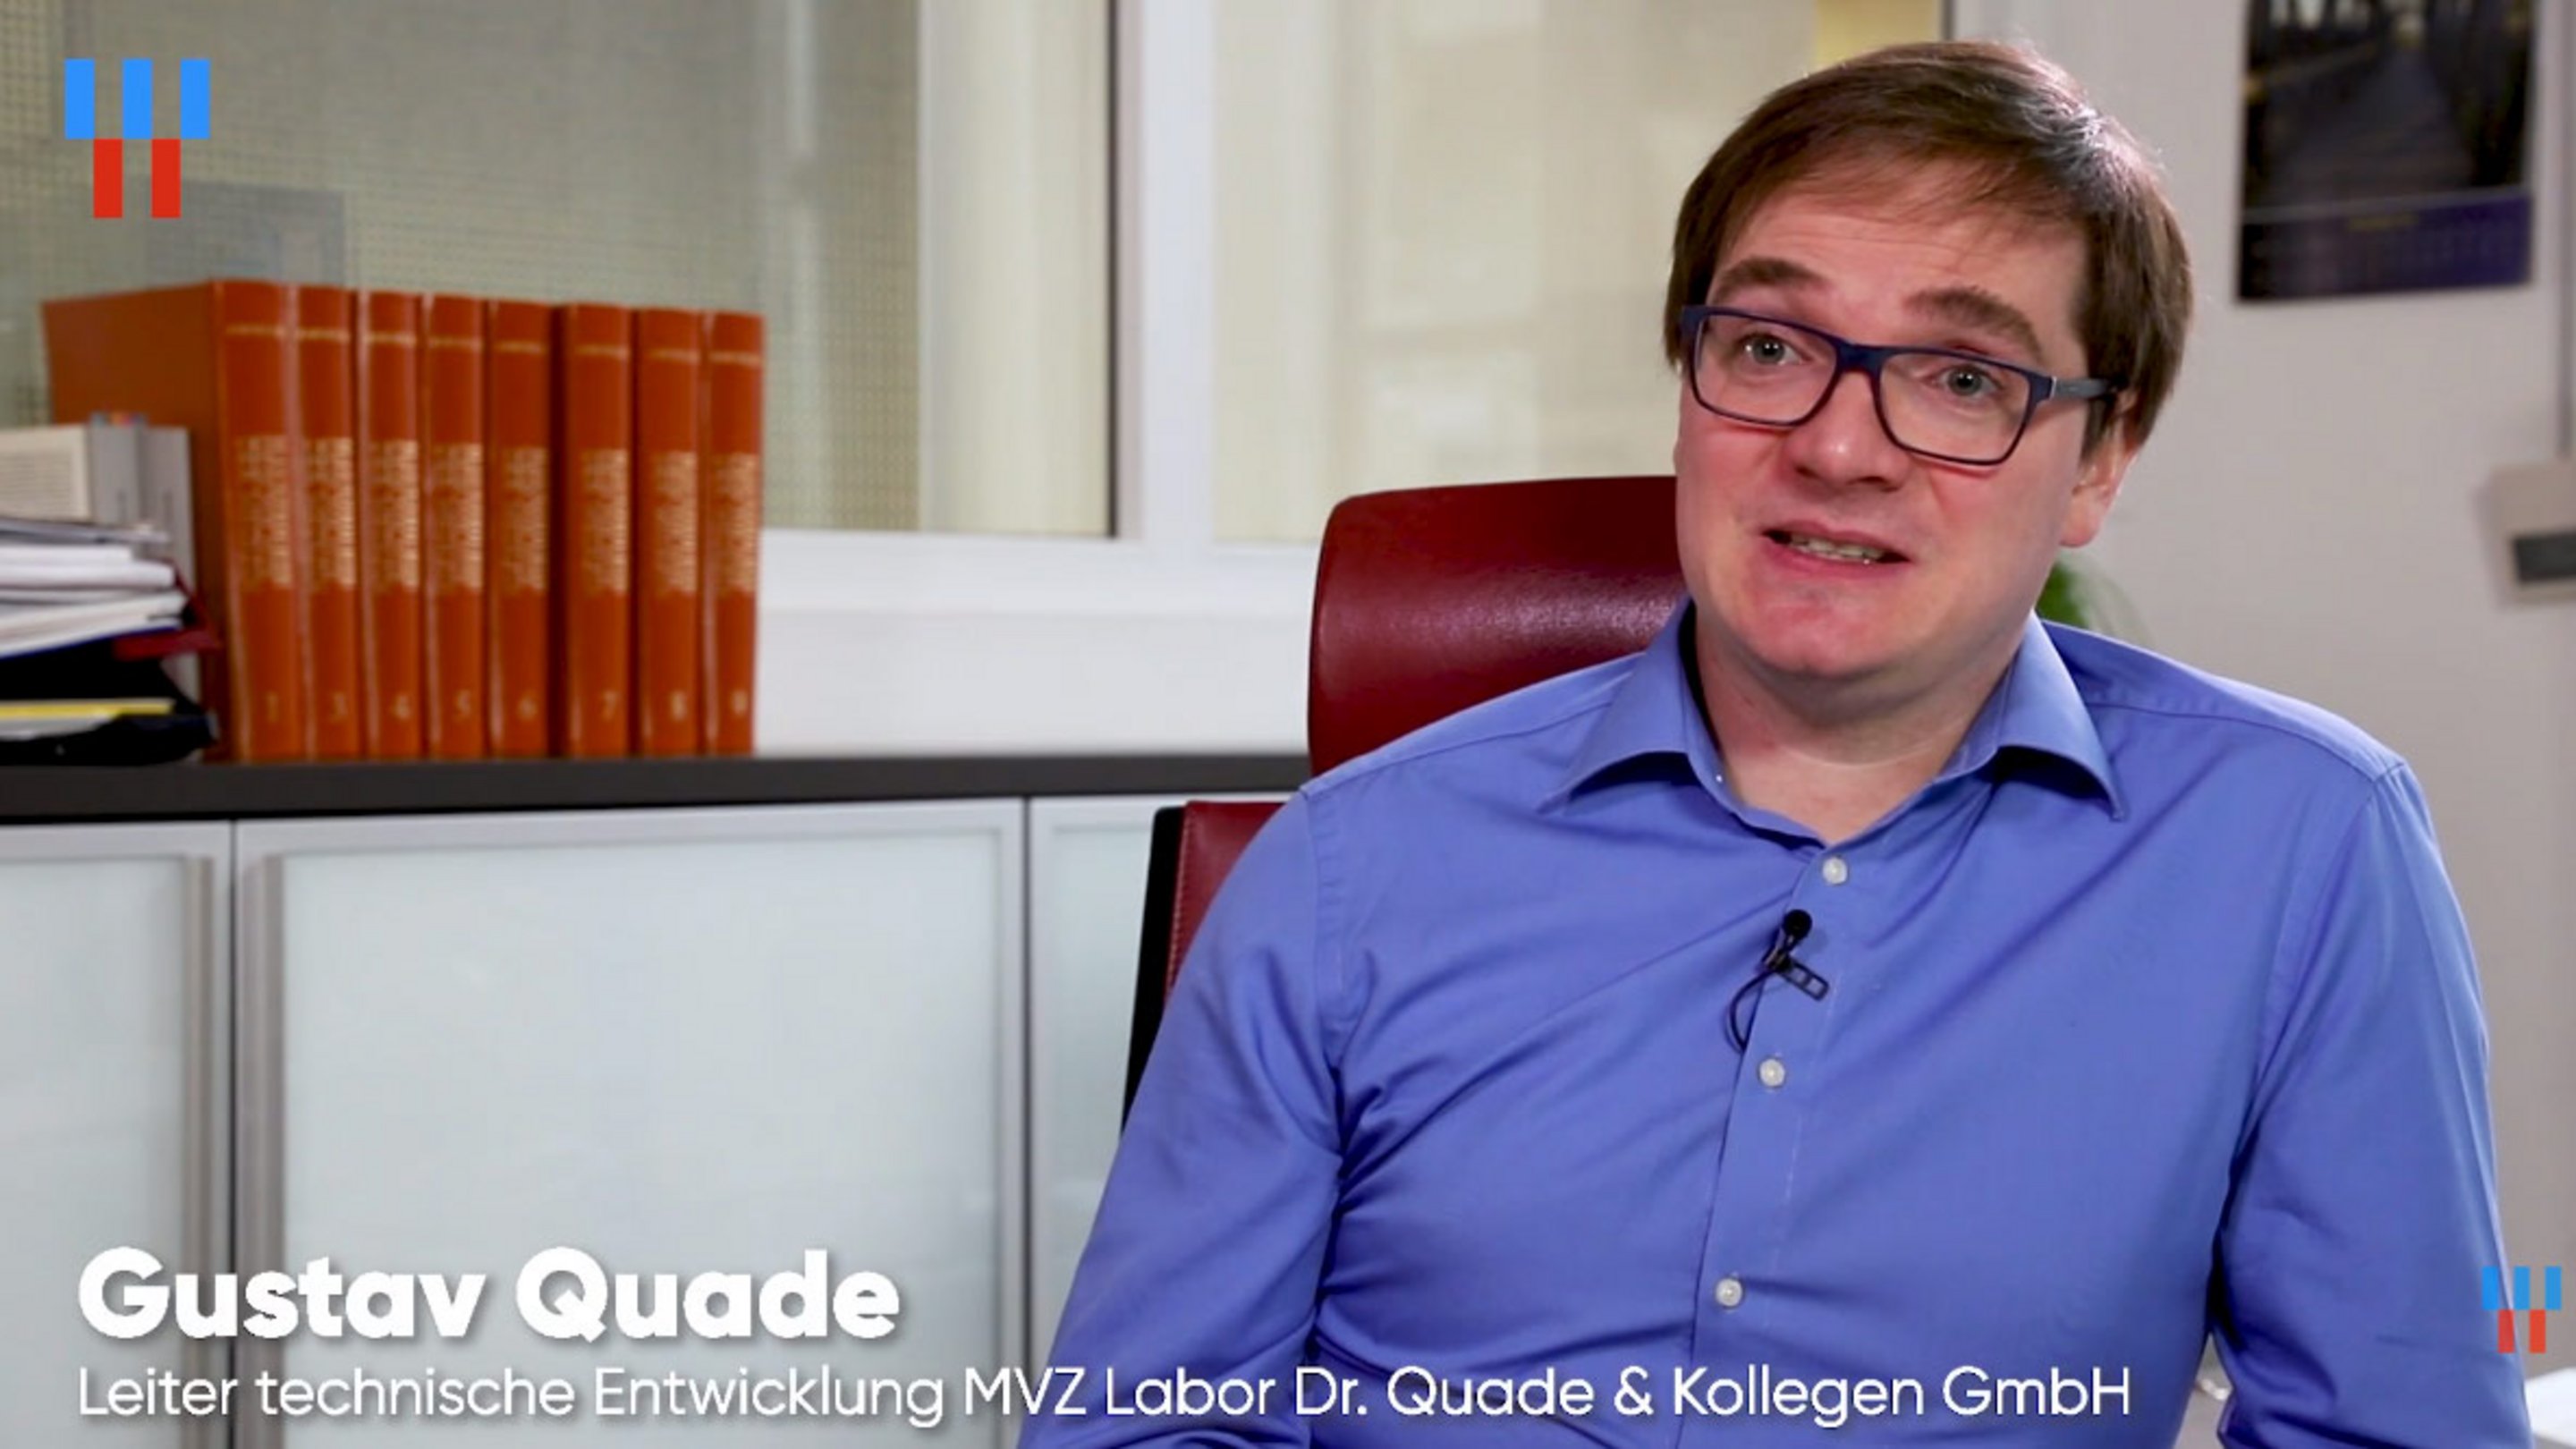 Screenshot von unserem Videointerview mit Gustav Quade vom MVZ Labor Dr. Quade & Kollegen